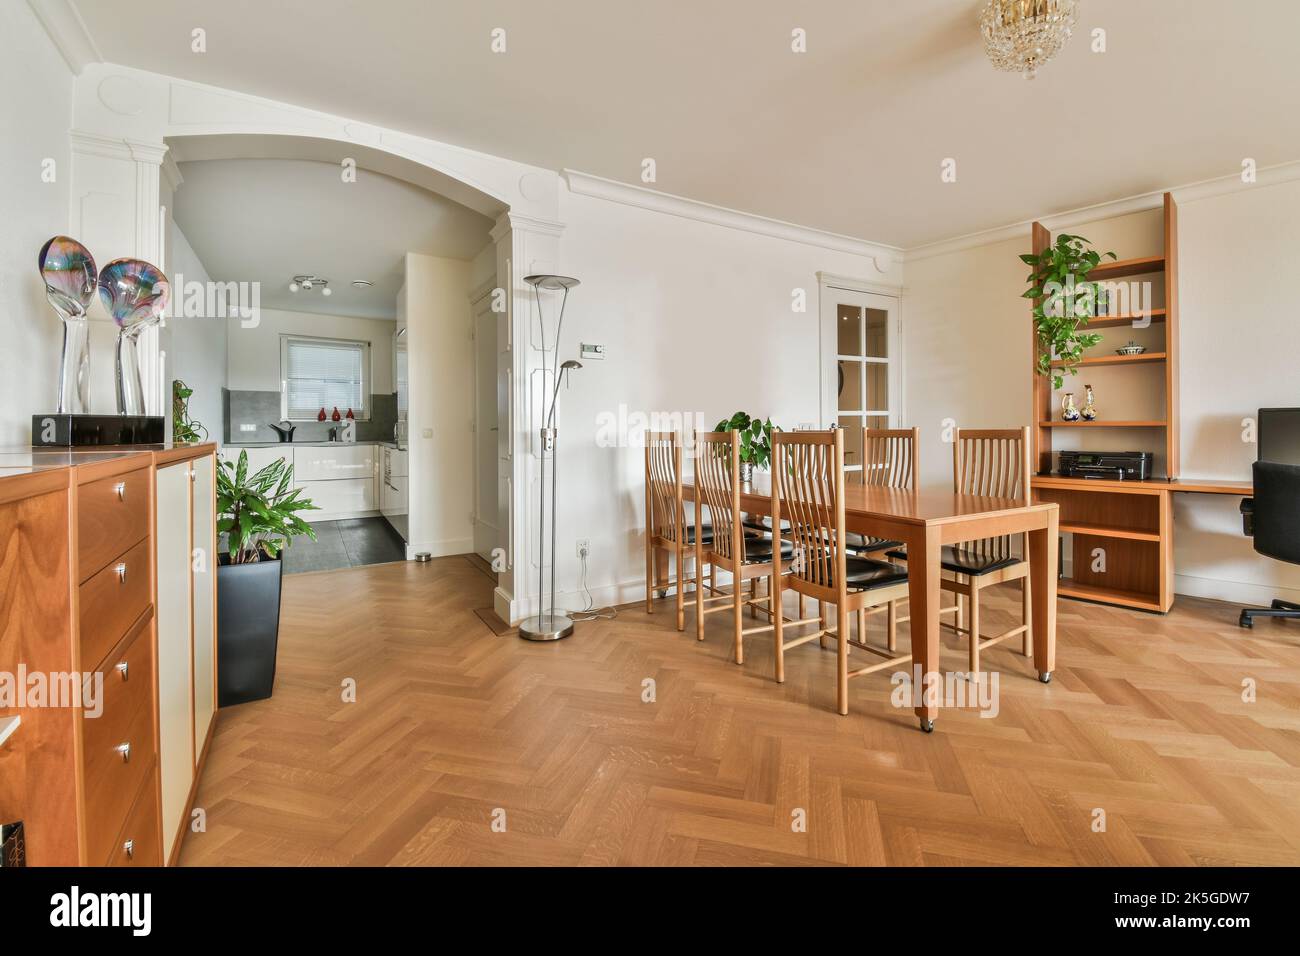 Stilvolles Wohndesign der Essecke mit Lampen, die über Holztisch und -Stühlen hängen, in einem modernen Apartment mit großen Fenstern und minimalistischem Design Stockfoto